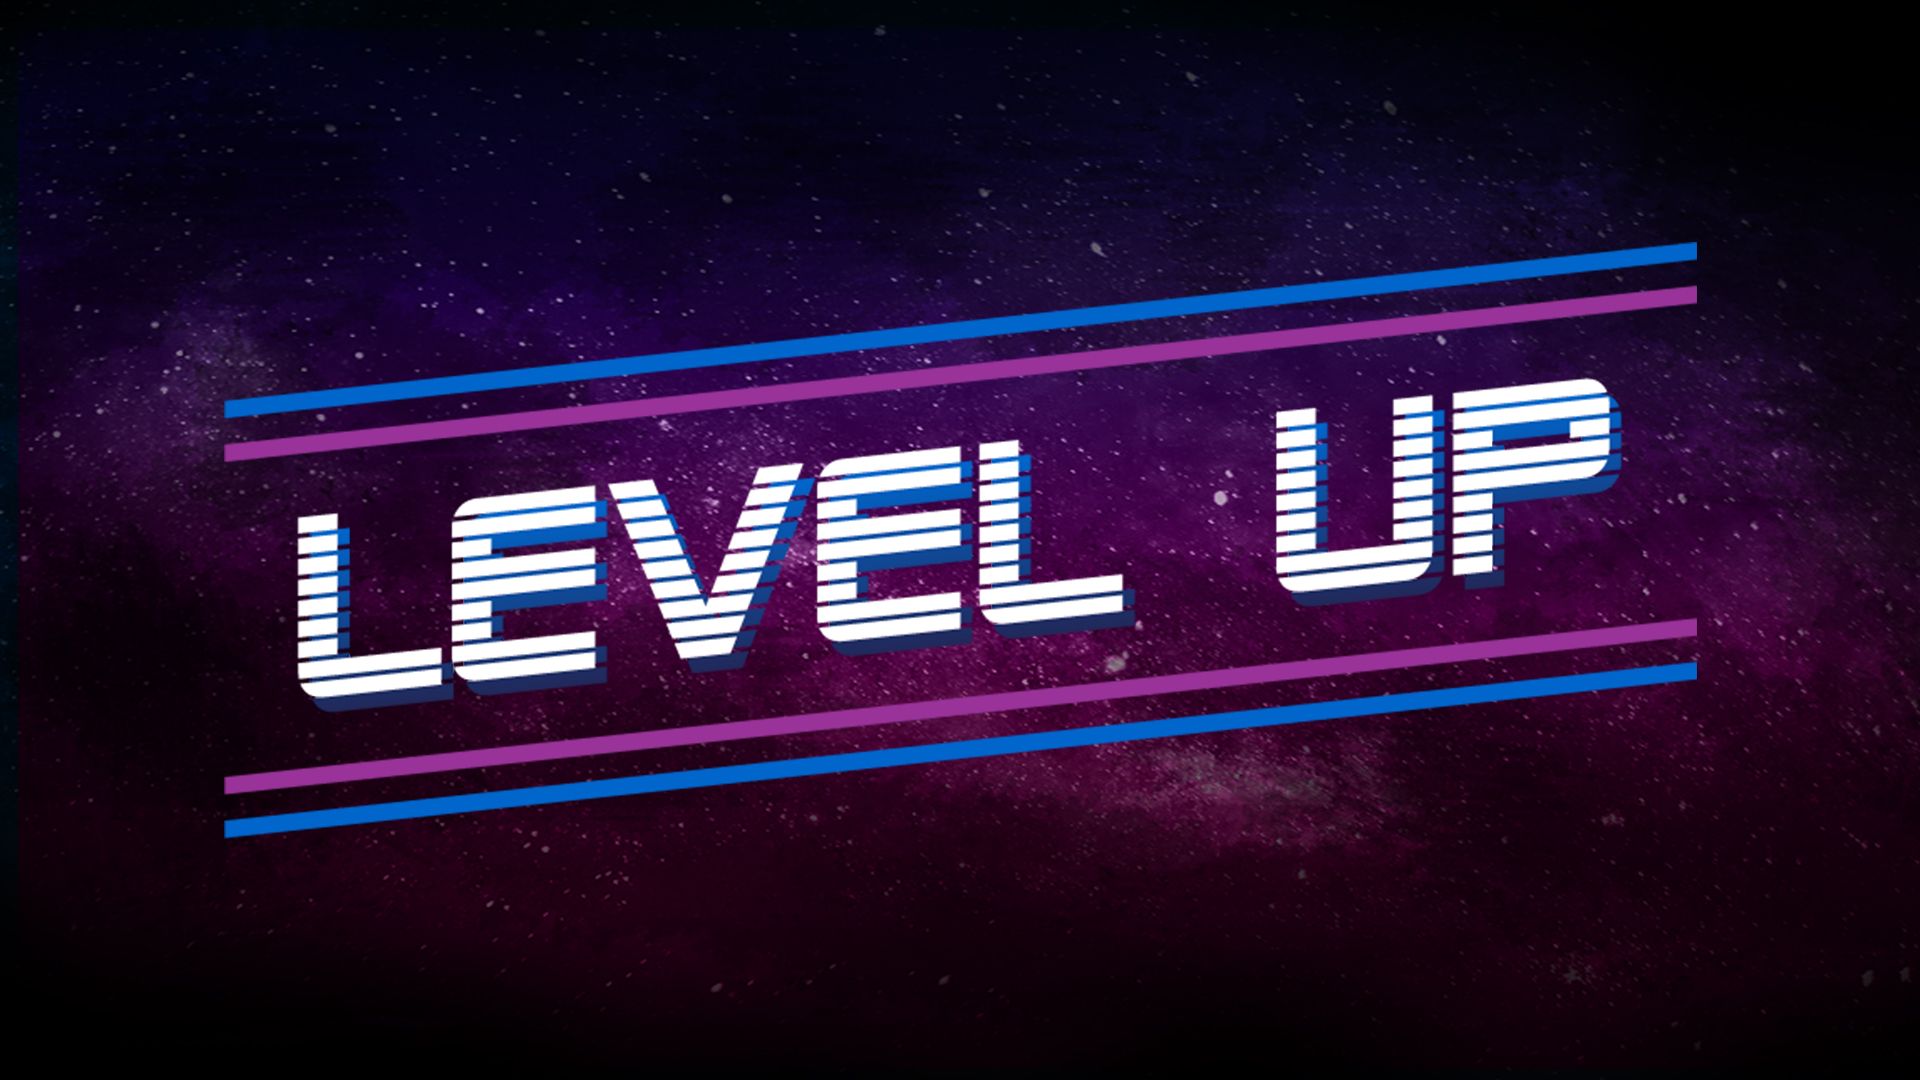 Level up worlds